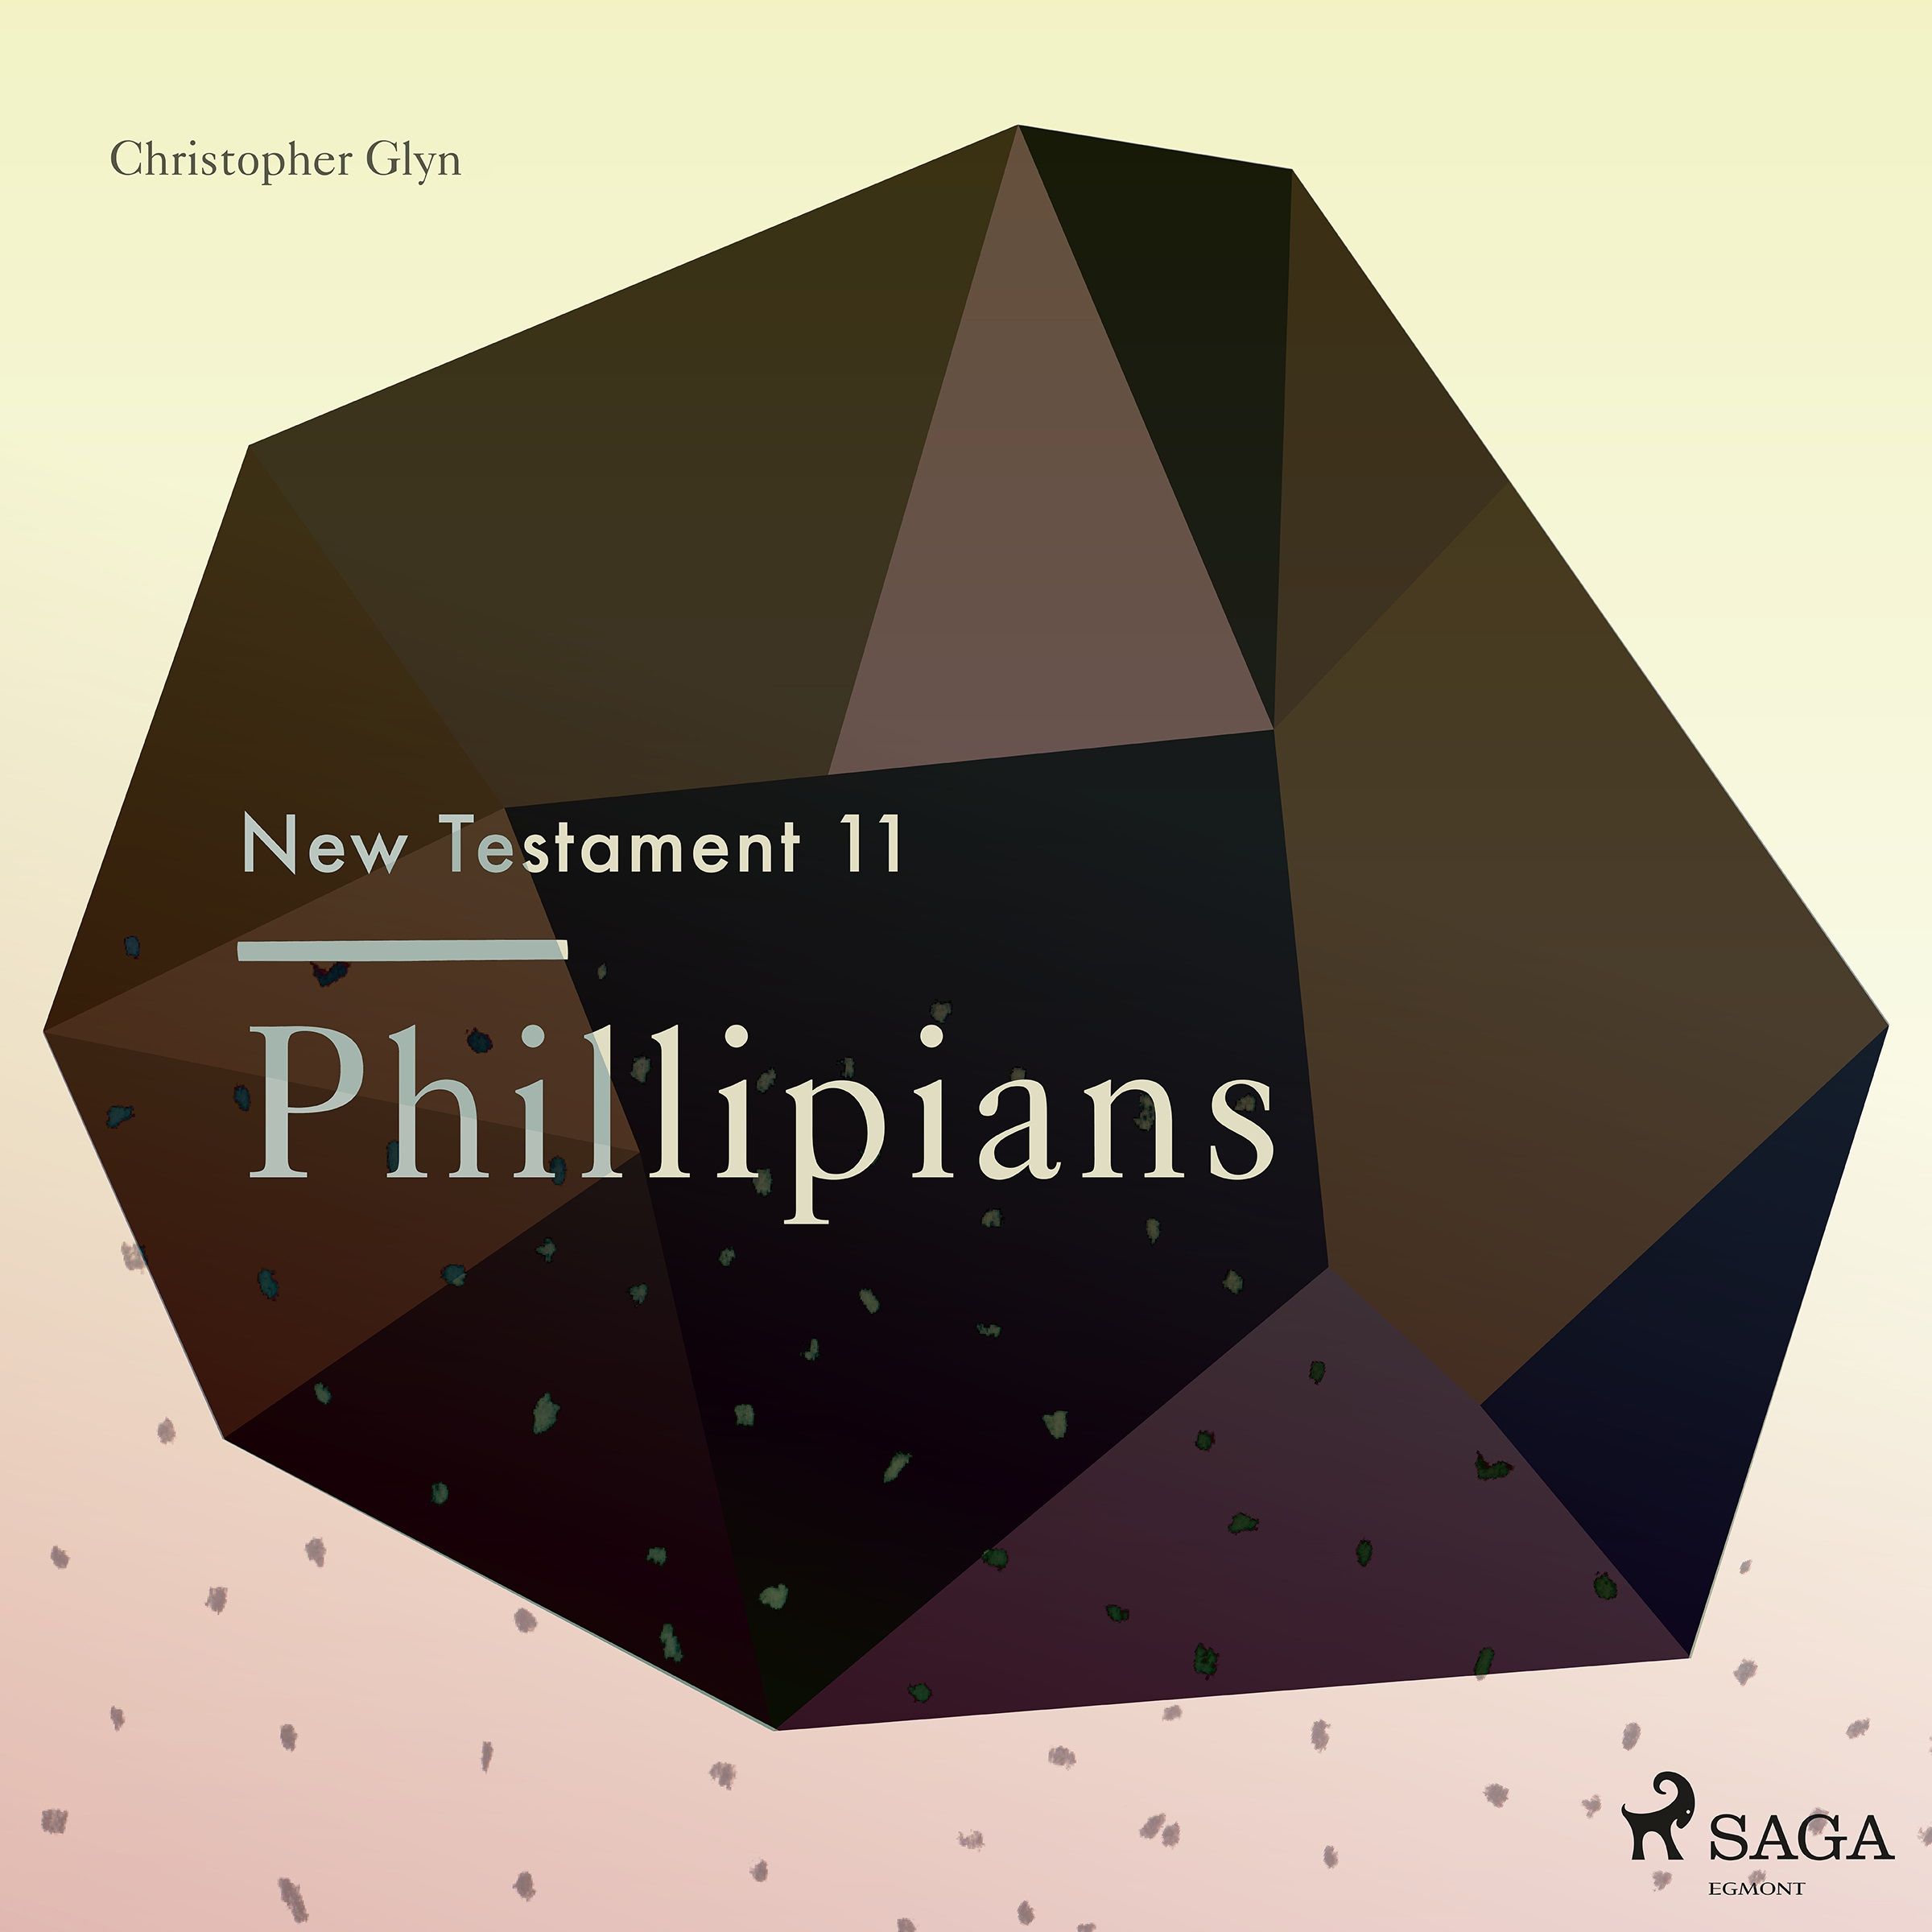 The New Testament 11 - Phillipians, lydbog af Christopher Glyn